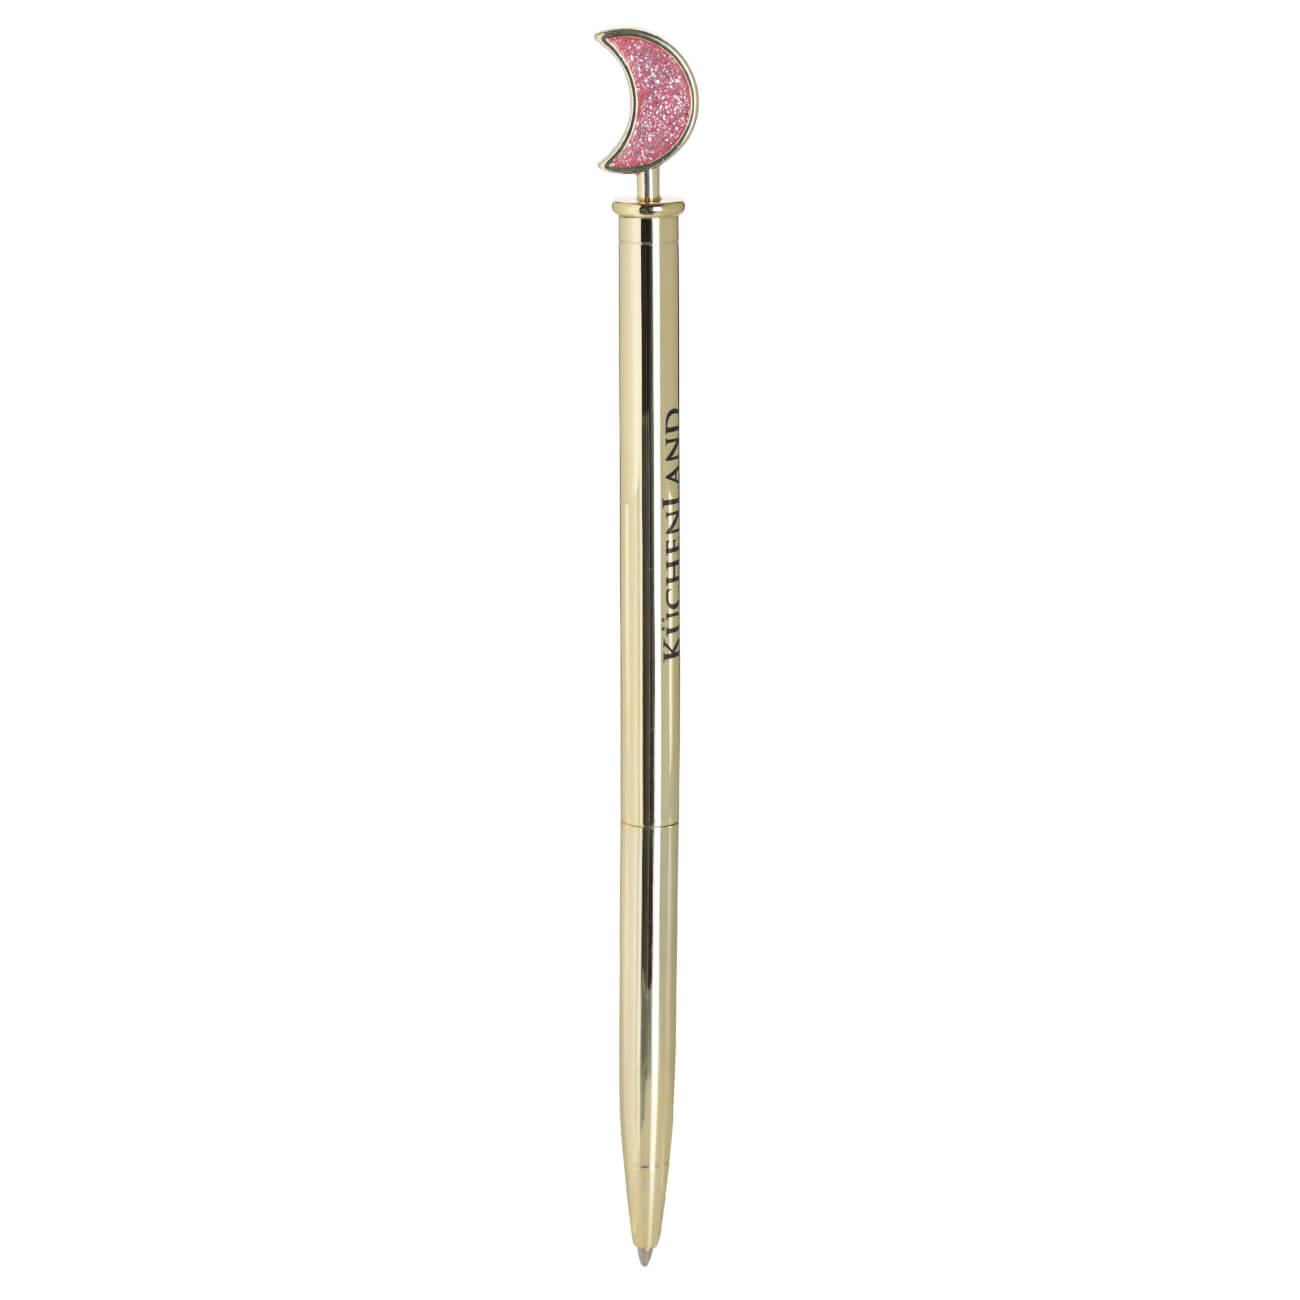 Ручка шариковая, 15 см, с фигуркой, металл, золотистая, Луна, Draw figure шариковая ручка офисмаг